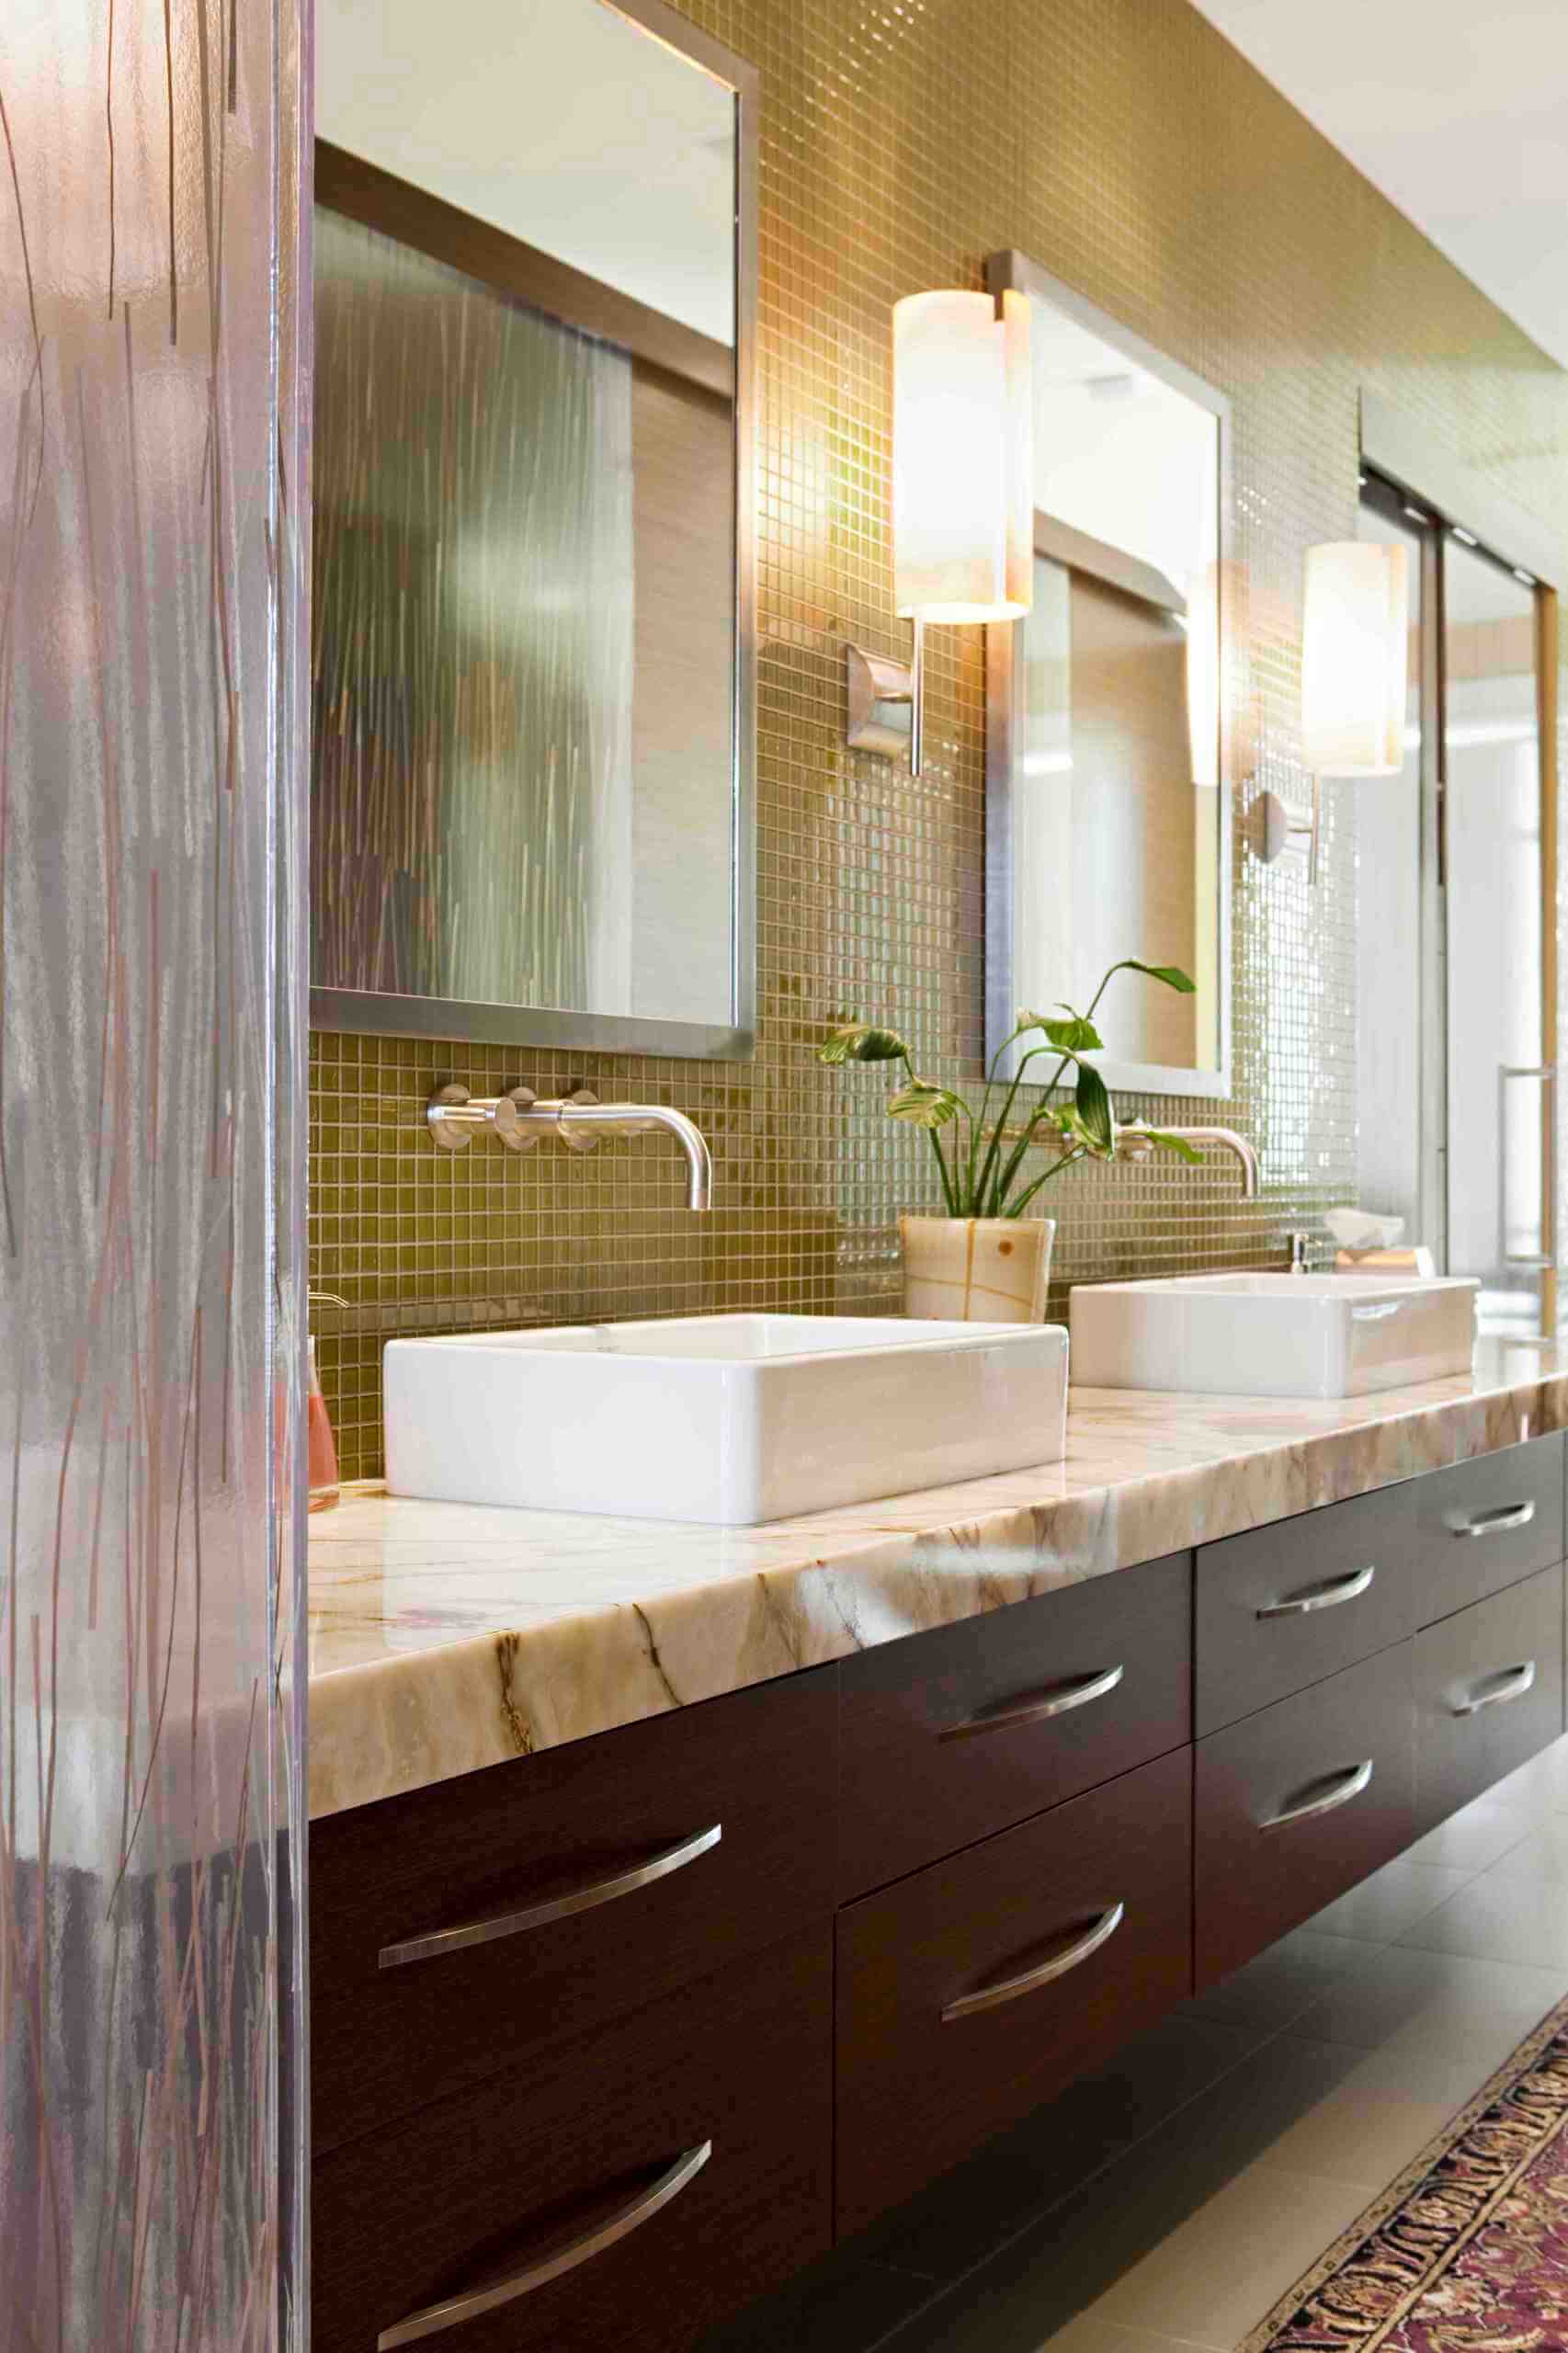 4 contemporary bathroom faucet designs